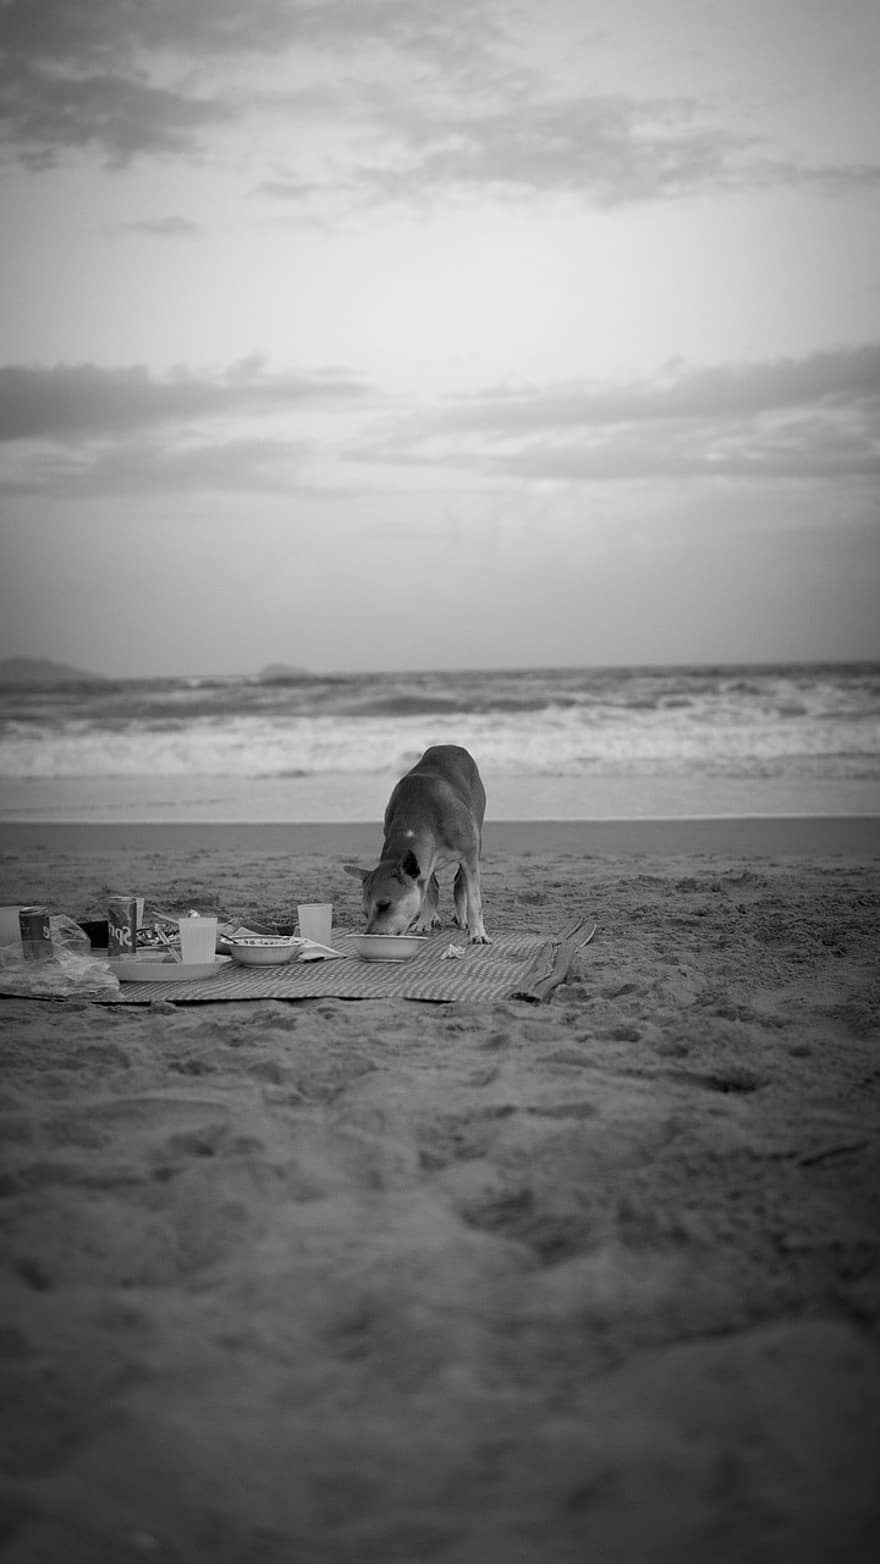 الكلب ، شاطئ بحر ، غروب الشمس ، ساحل ، المناظر الطبيعيه ، محيط ، طبيعة ، البحر ، غائم